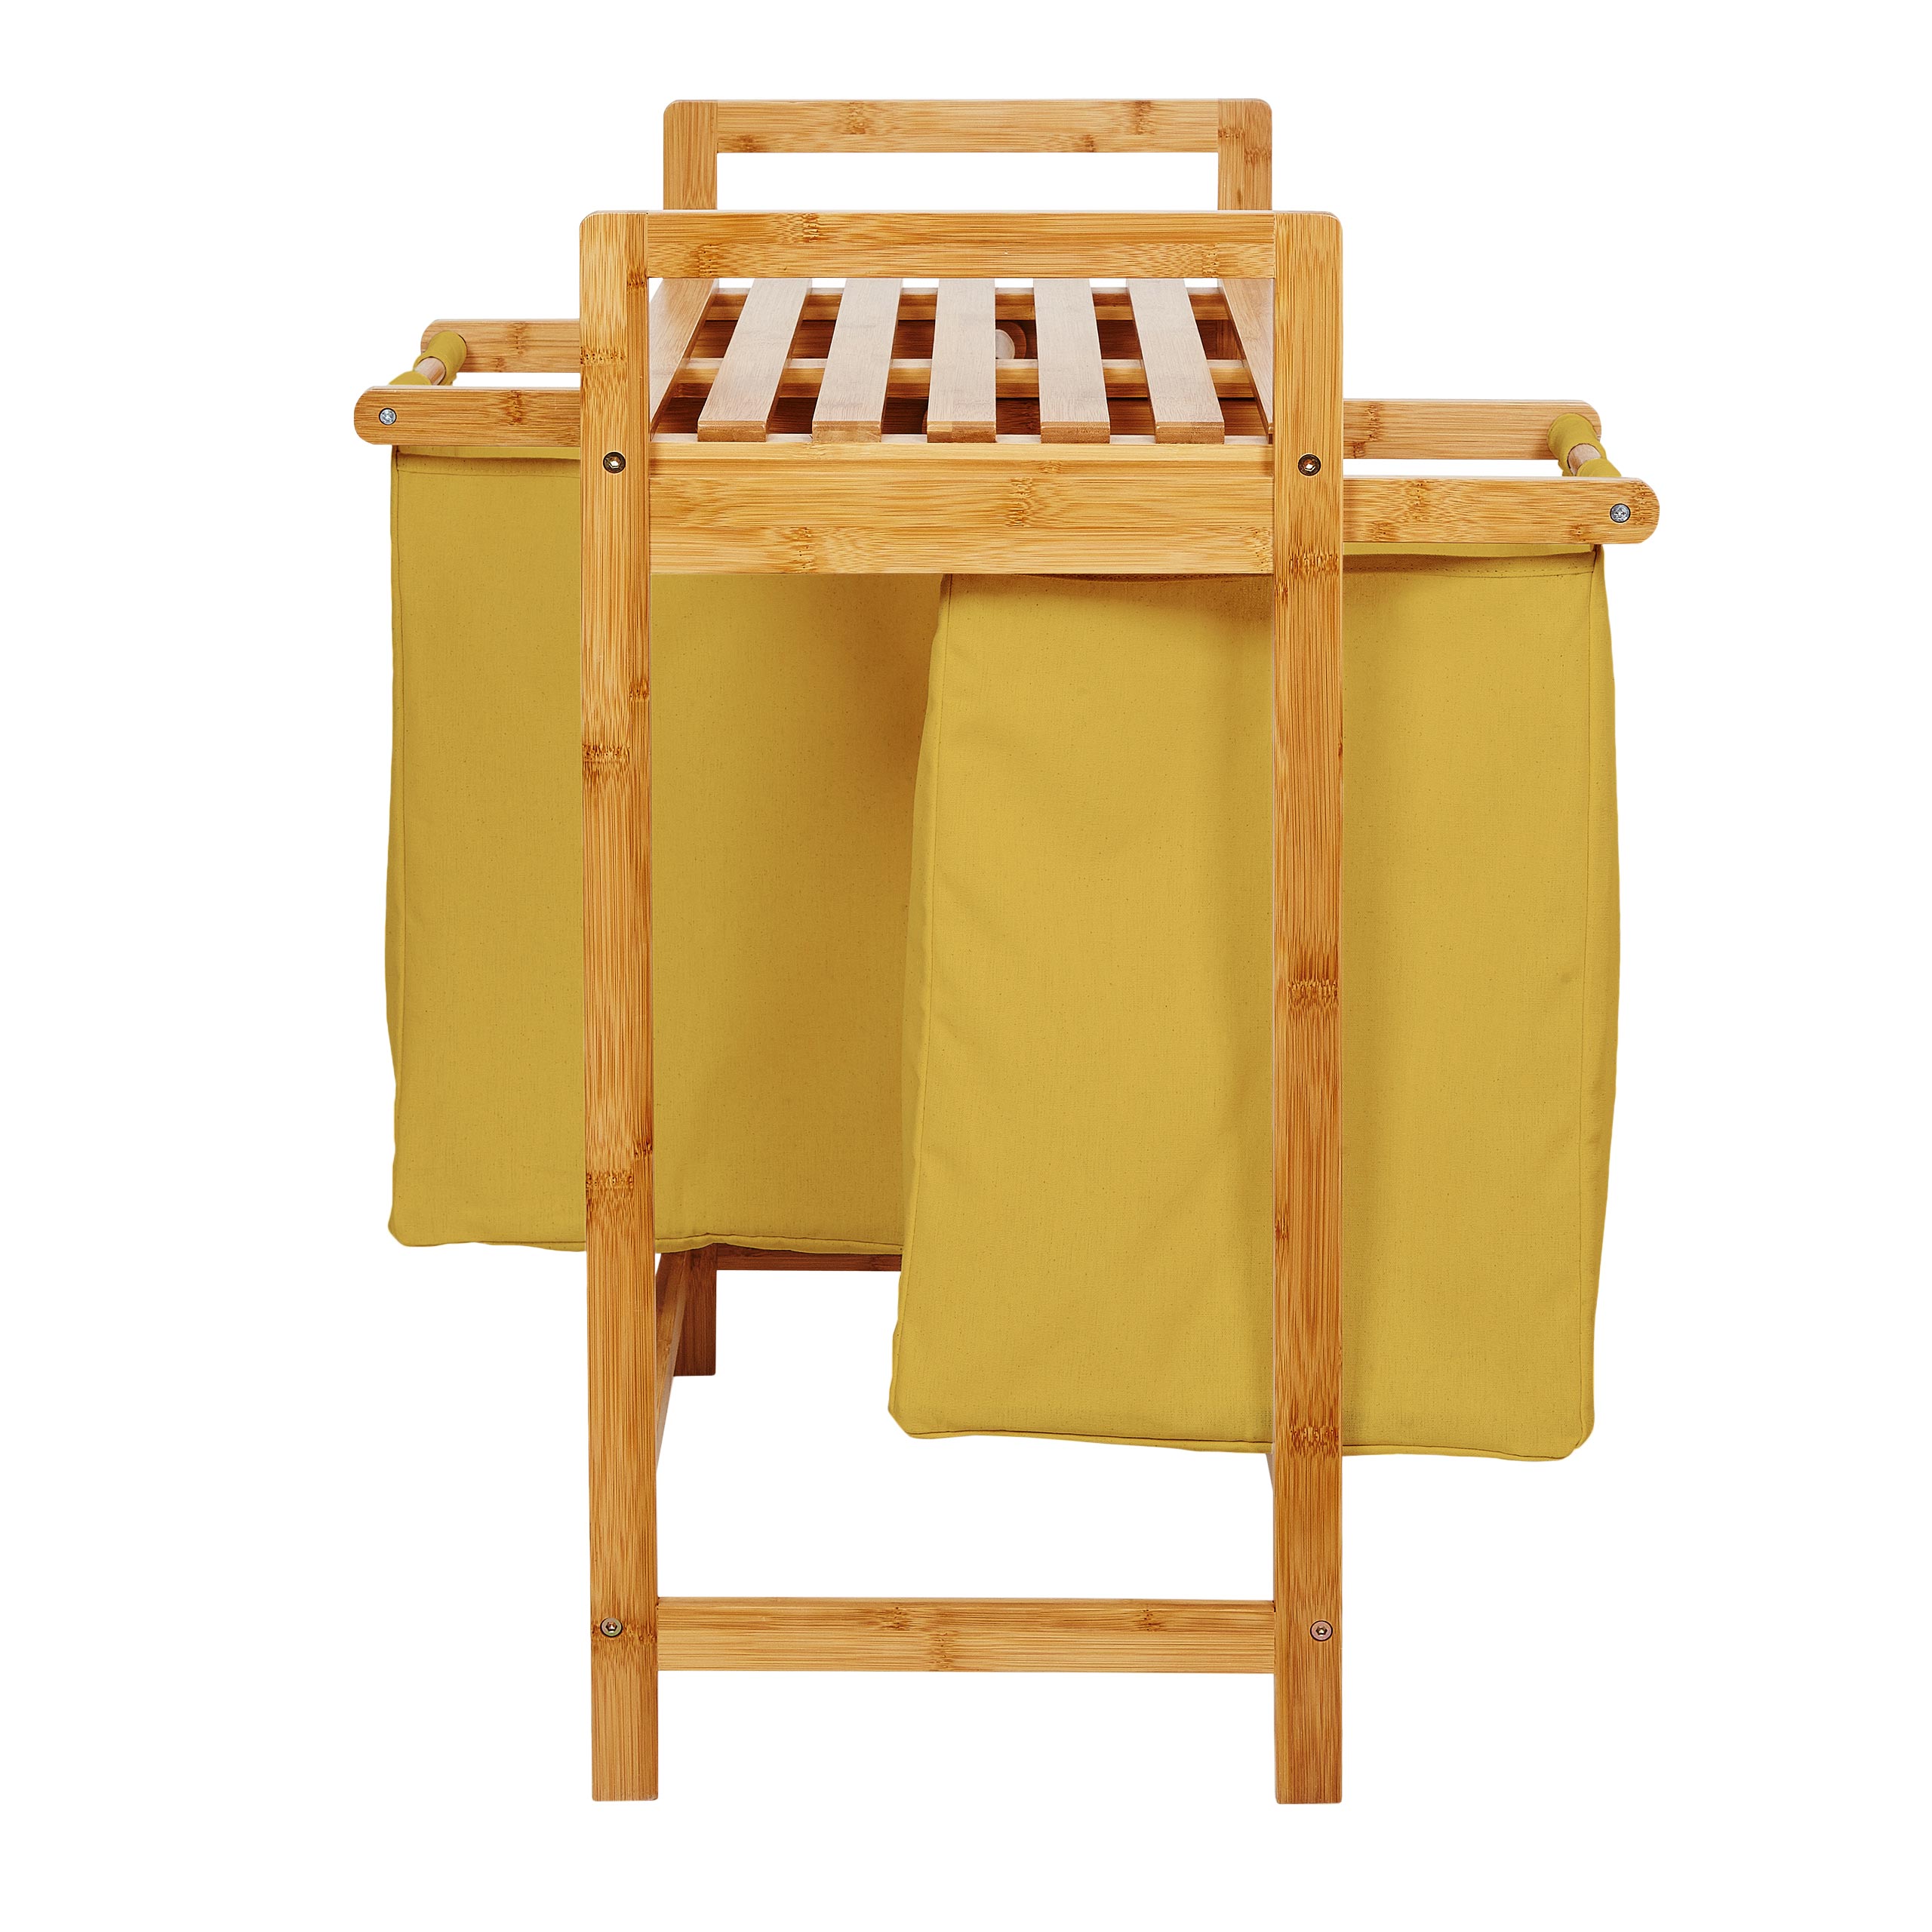 Bambus Wäschekorb mit 2 ausziehbaren Wäschesacken - 73 x 64 x 33 cm - Gelb